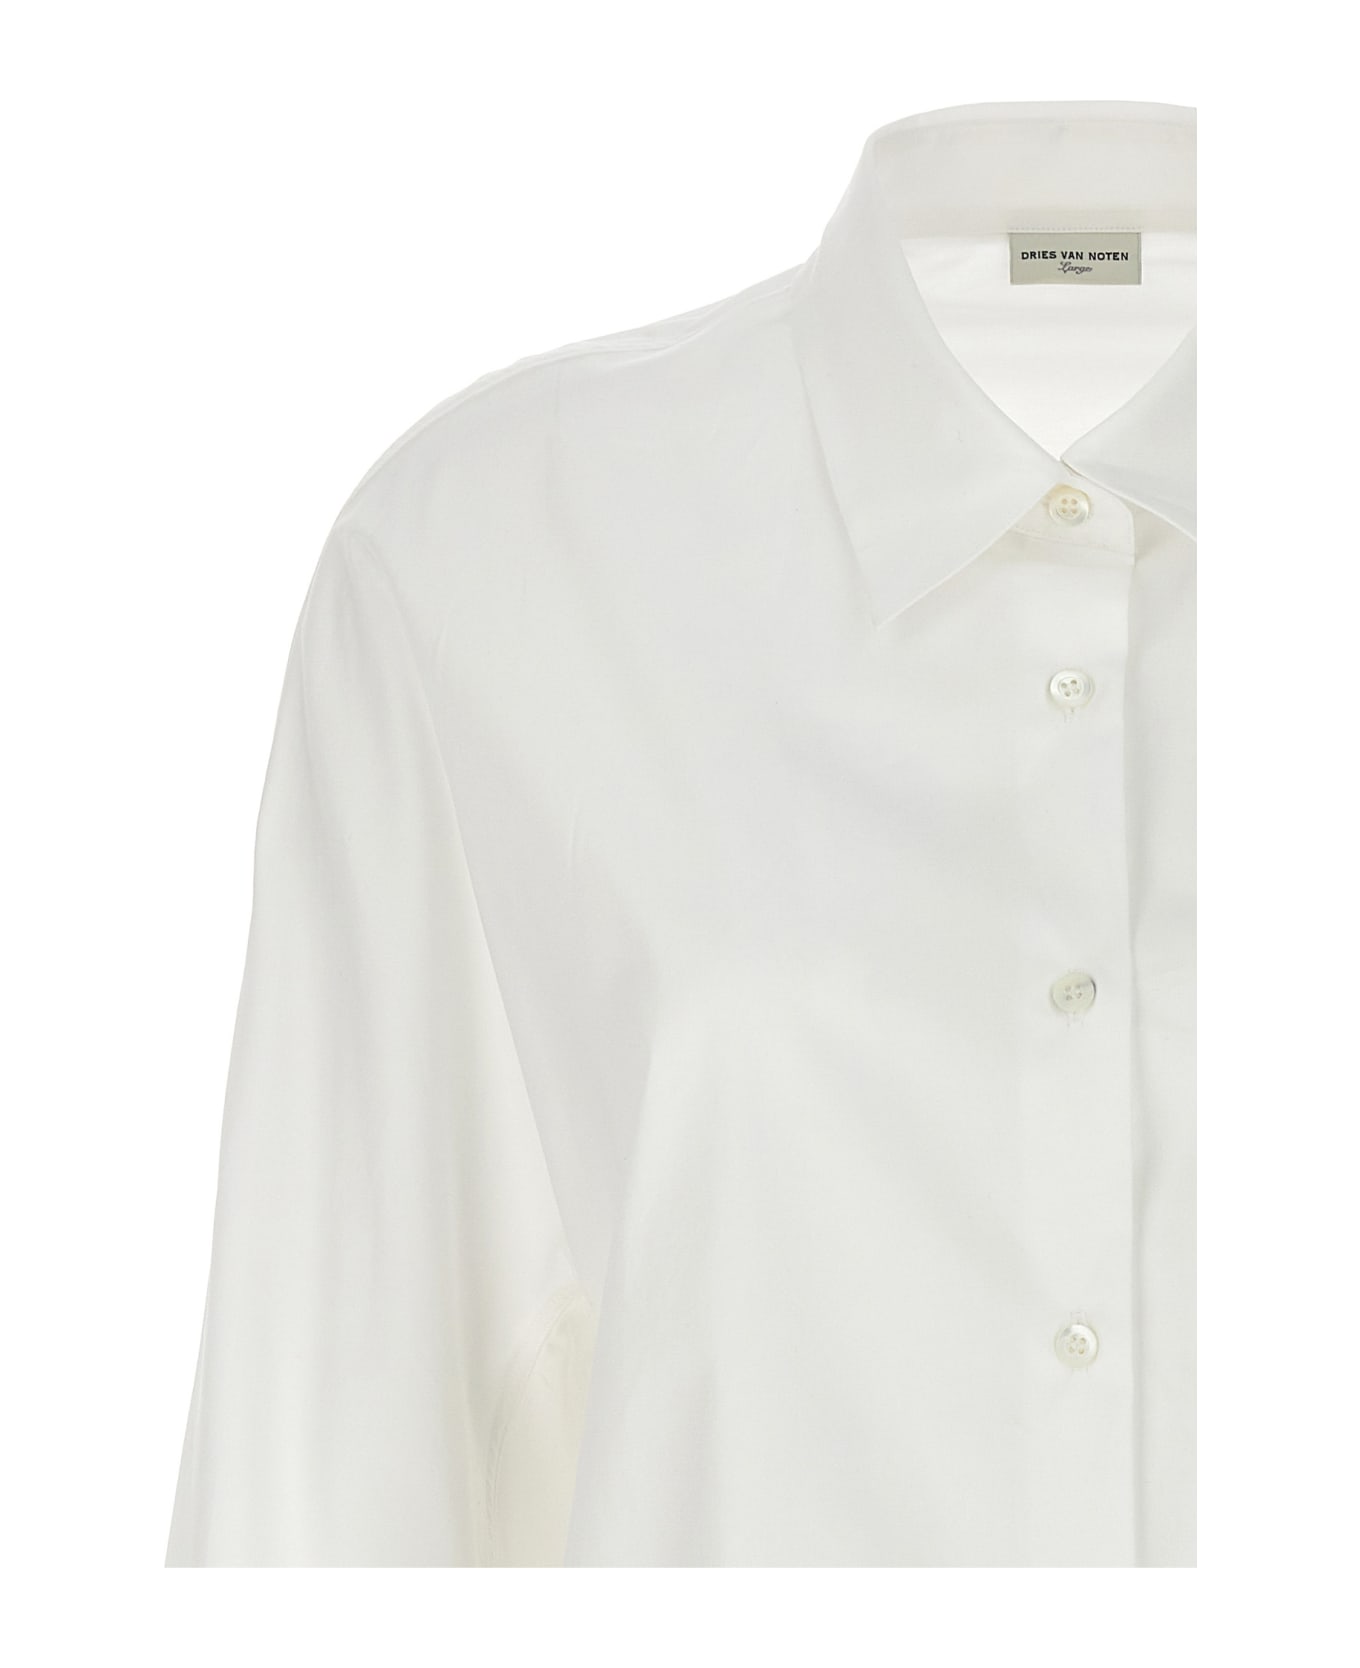 Dries Van Noten 'casio' Shirt - White